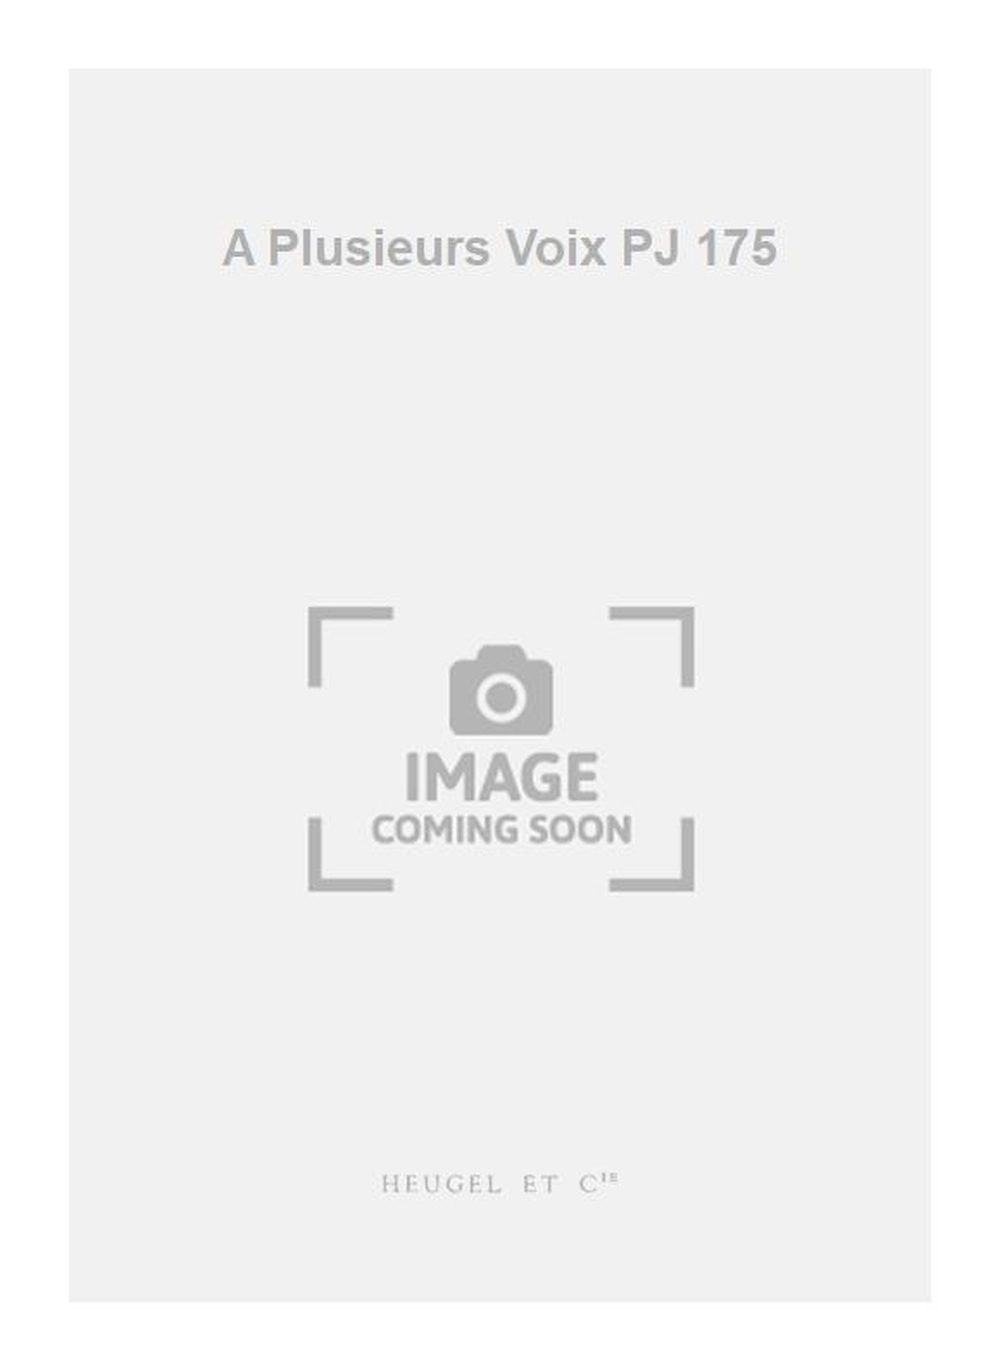 Marc Bleuse: A Plusieurs Voix PJ 175